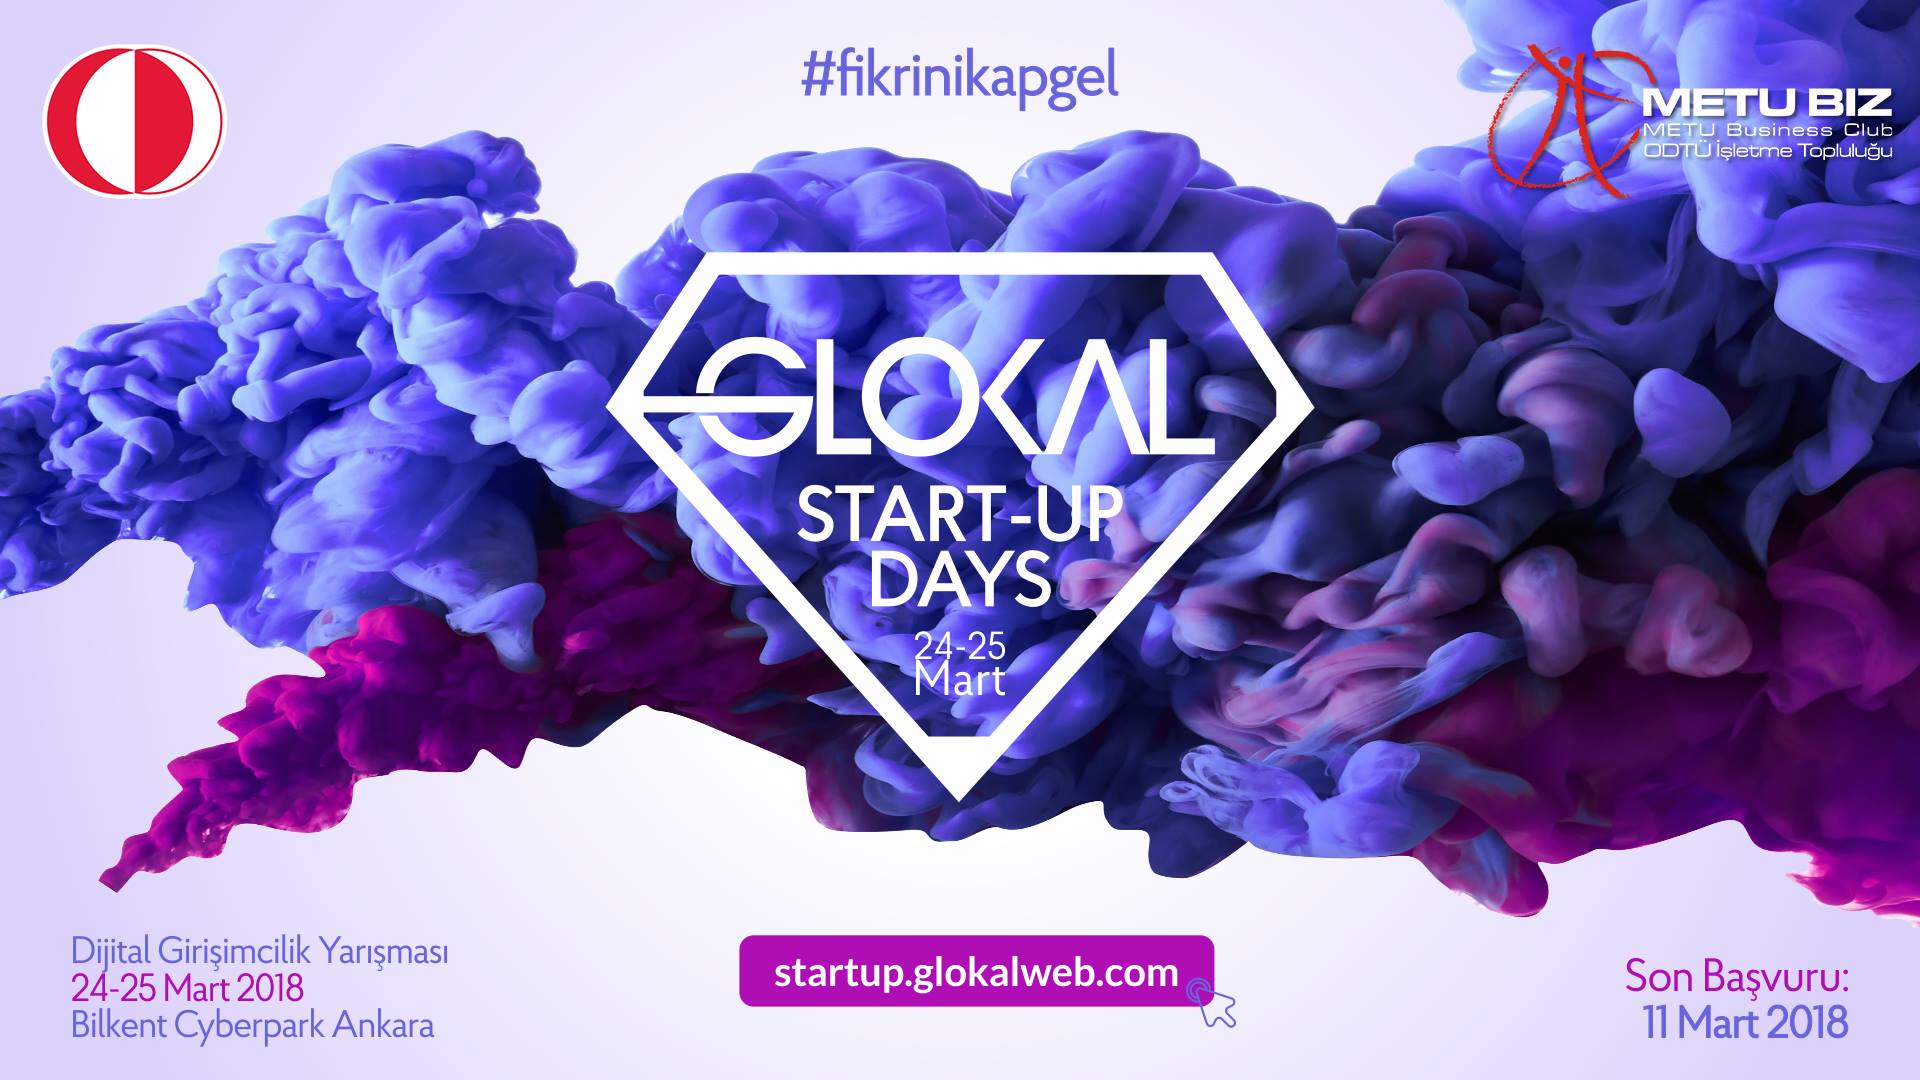 Dijital girişimcilik yarışması Glokal Start-Up Days başvuruları başladı